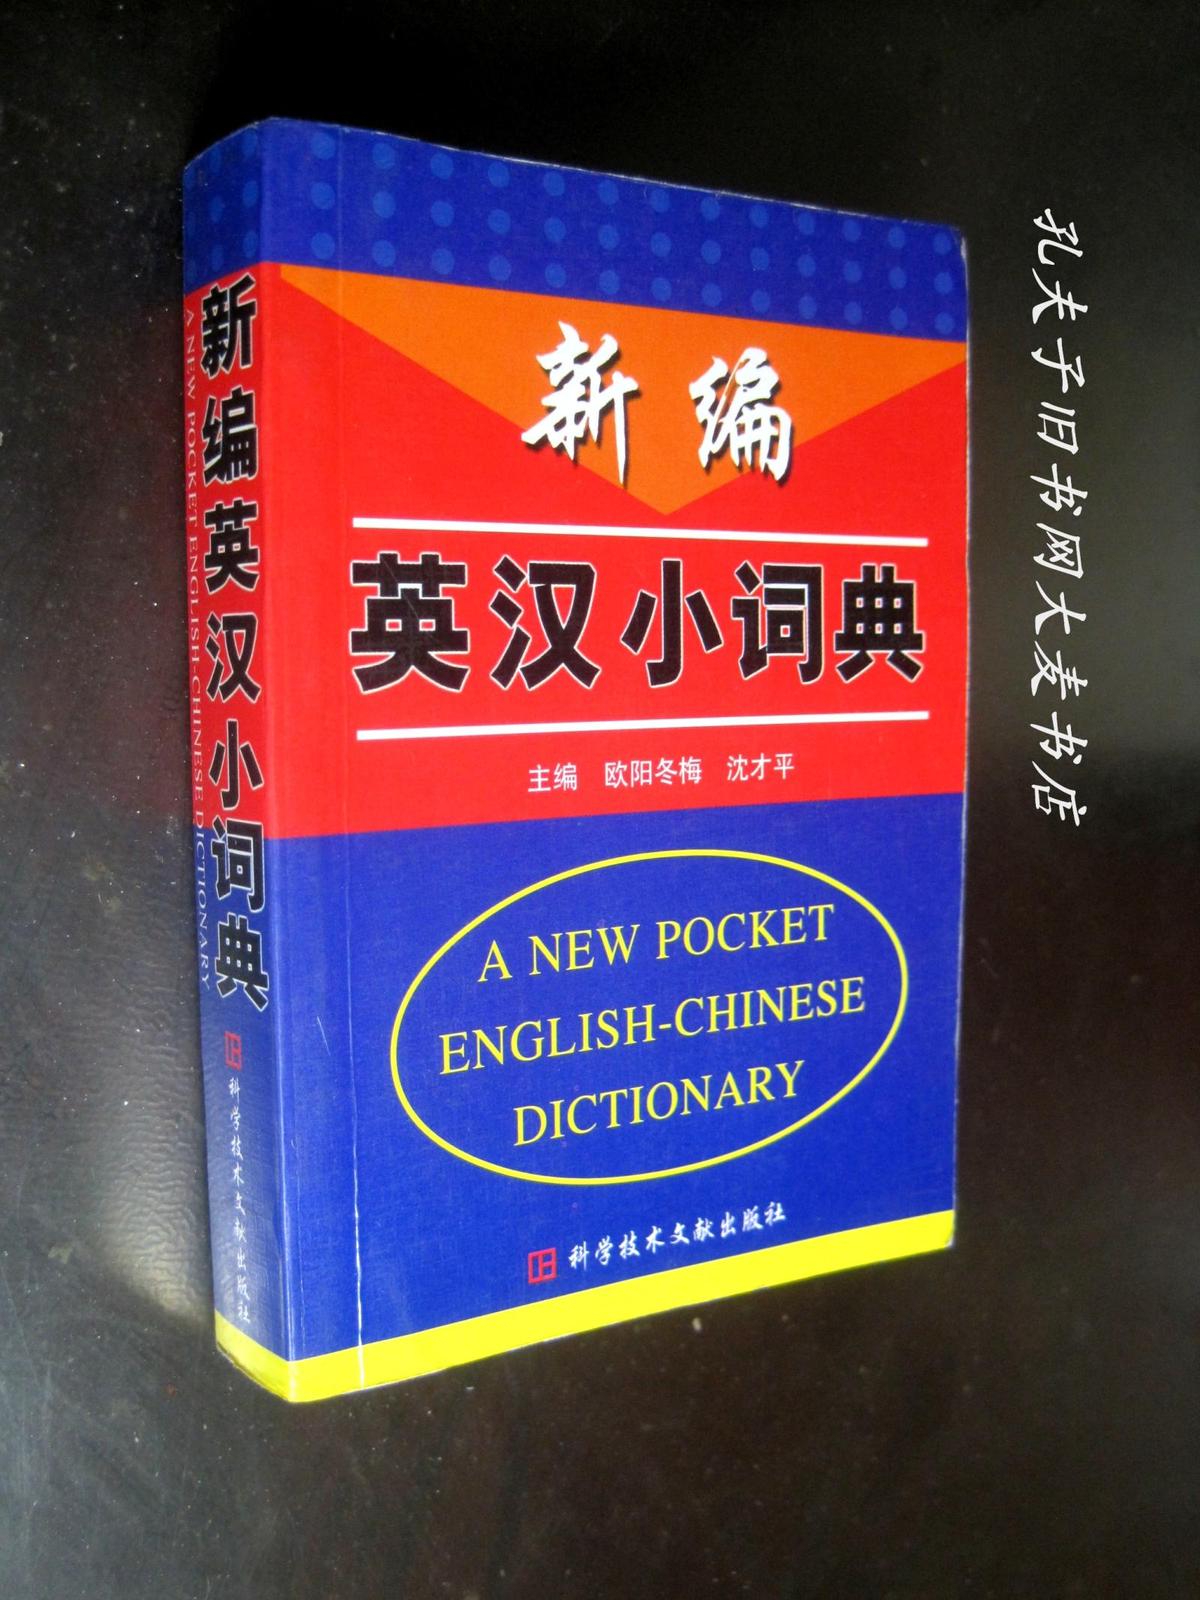 《新编英汉小词典》科学技术文献出版社